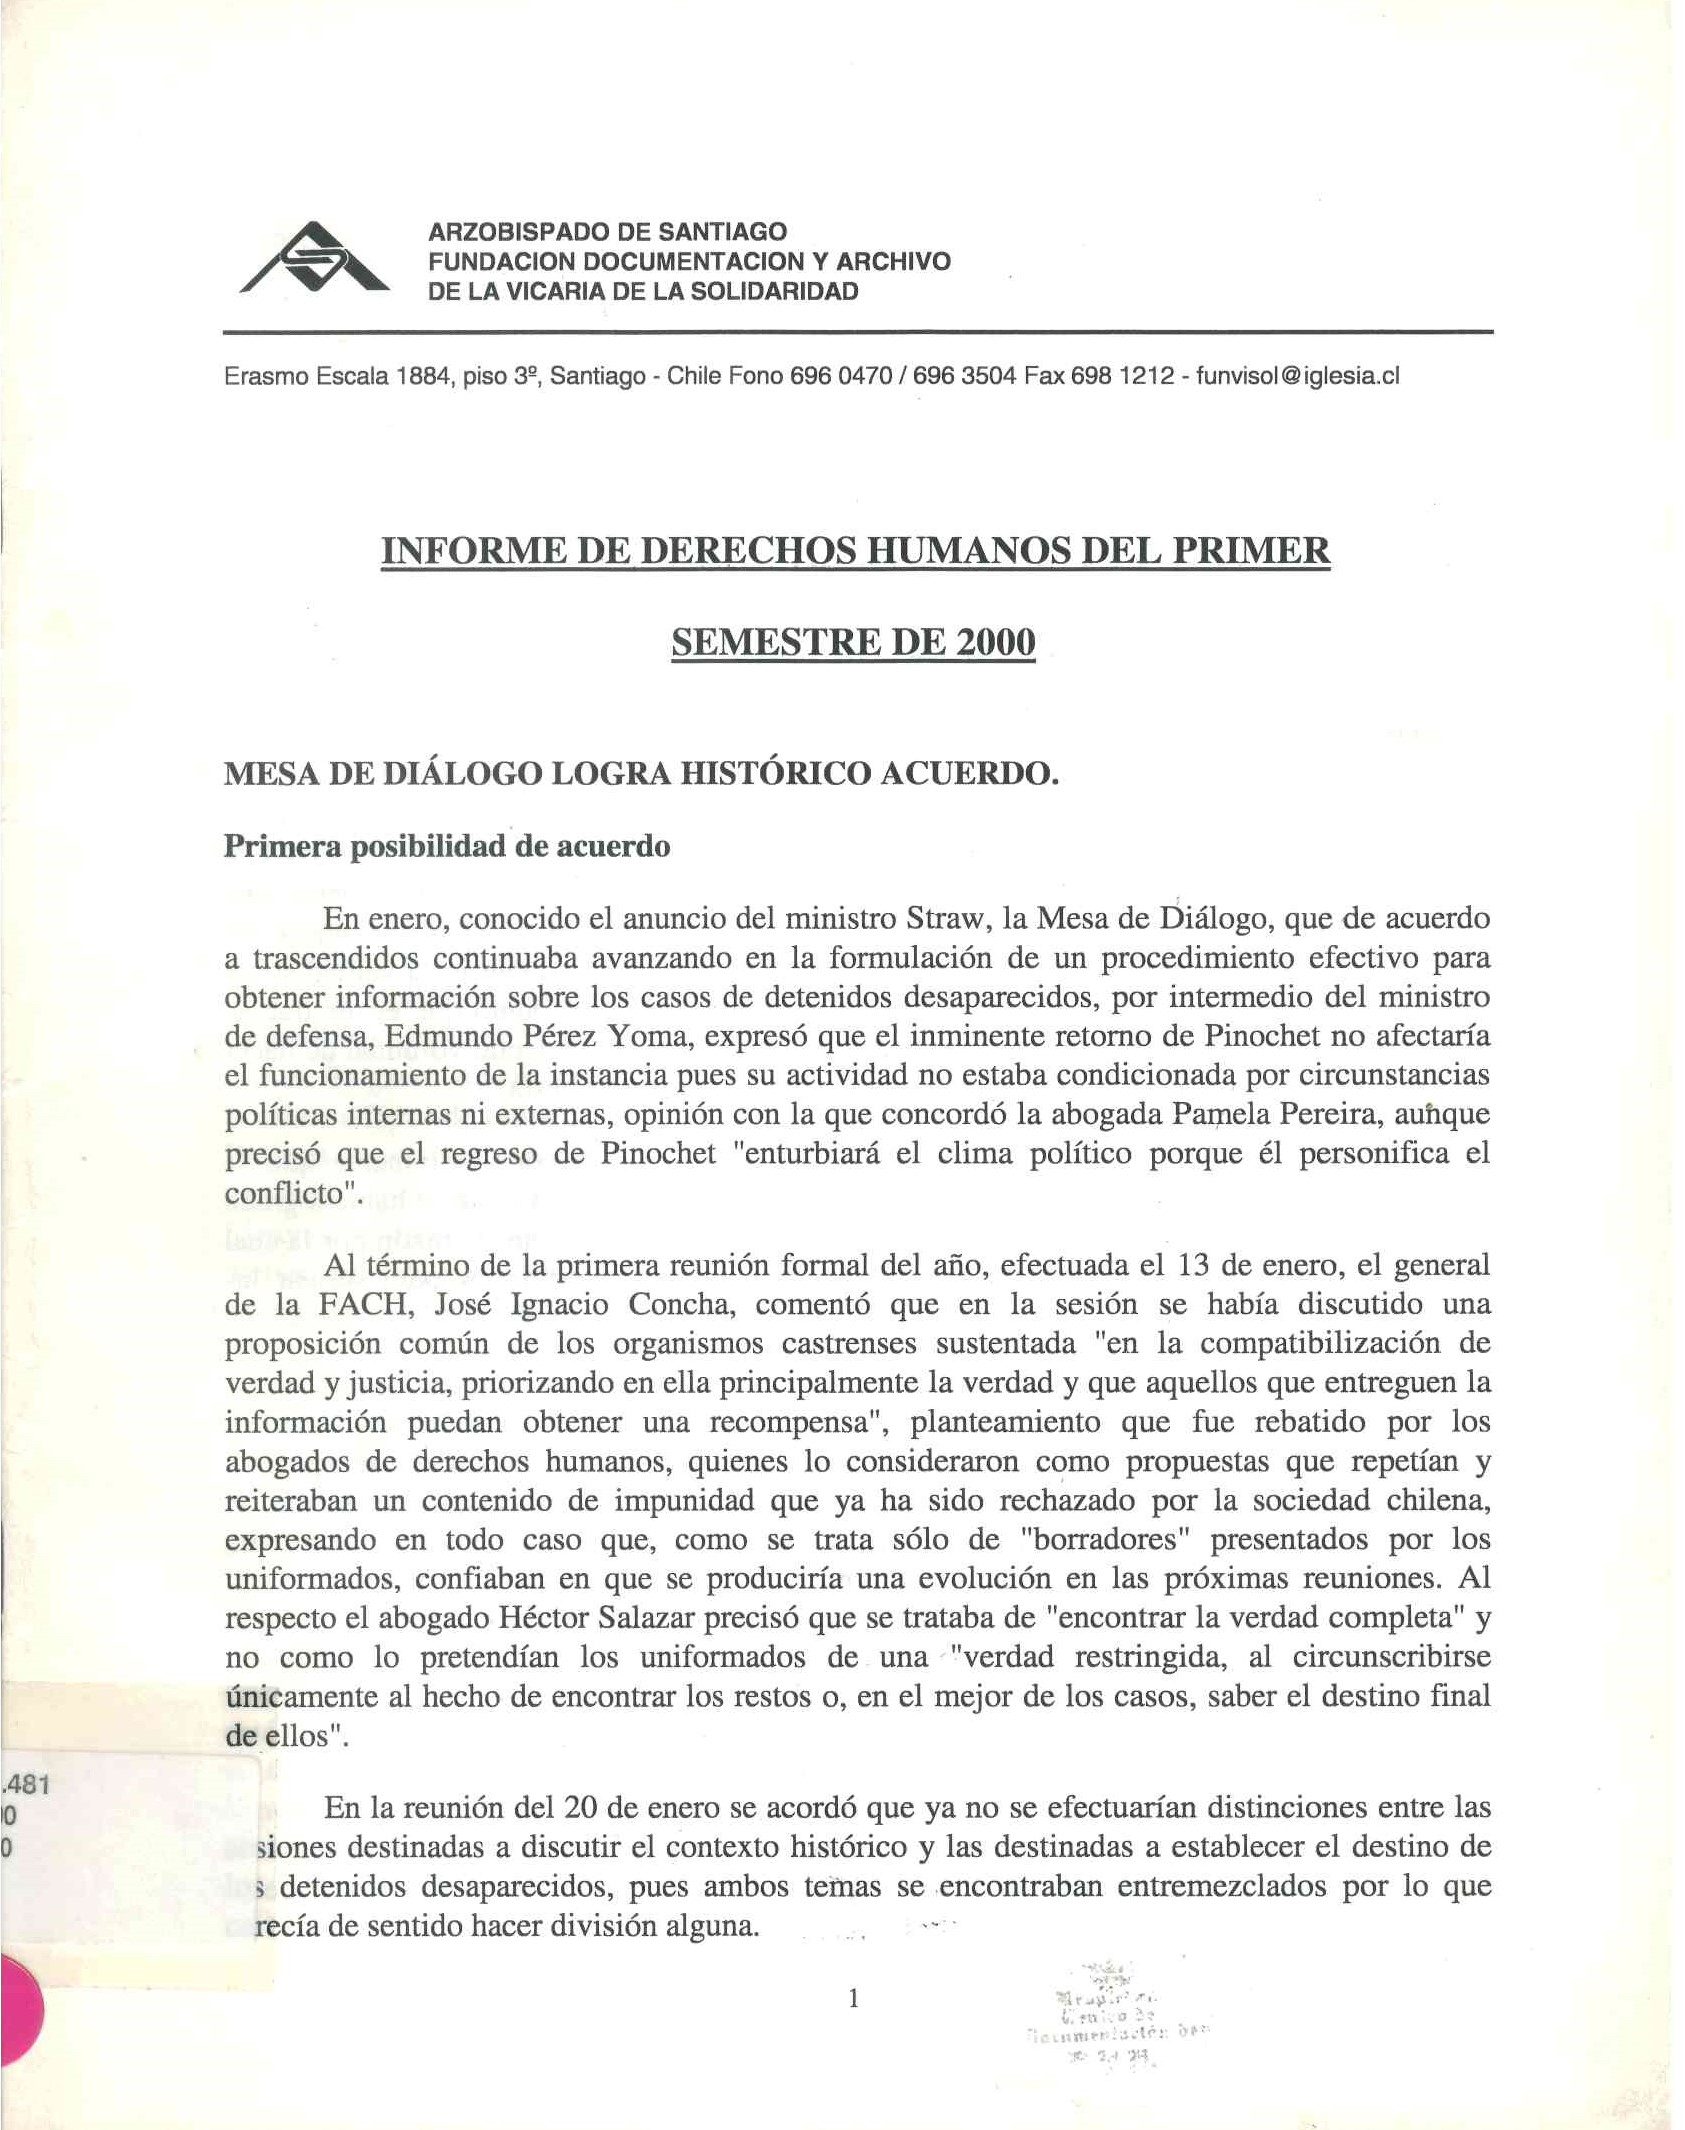 Informe de derechos humanos del primer semestre 2000